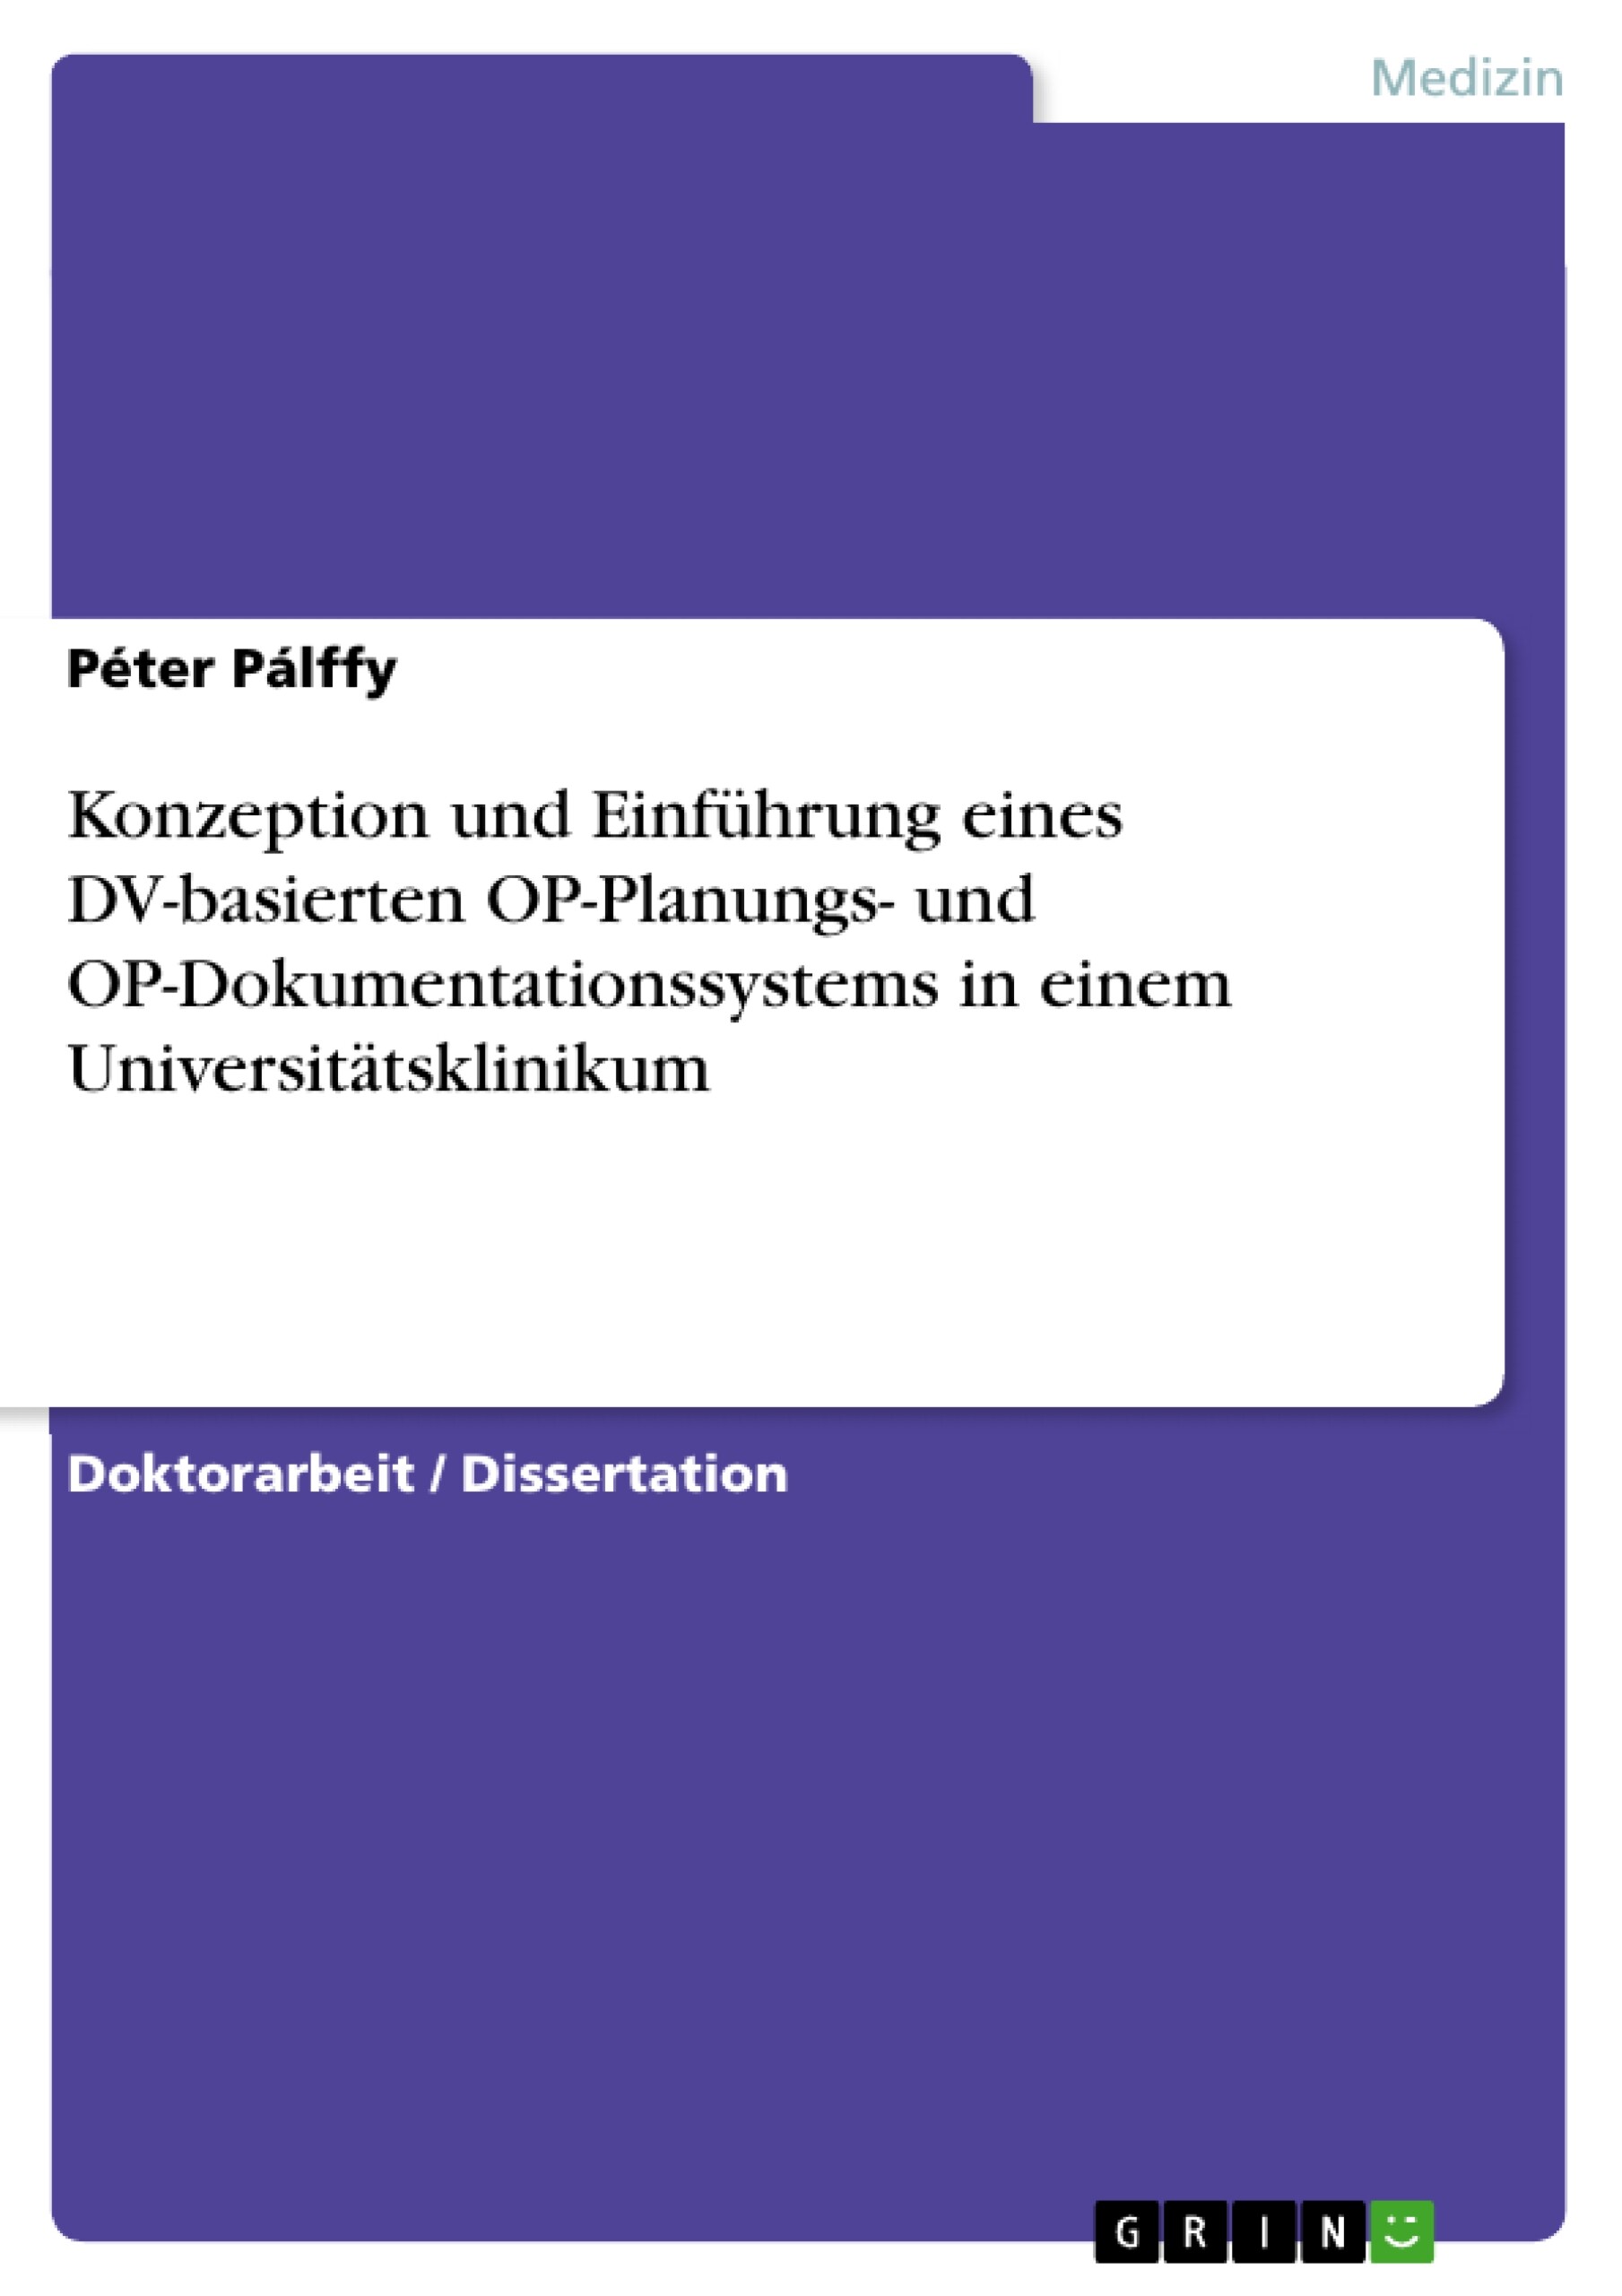 Konzeption und Einführung eines DV-basierten OP-Planungs- und  OP-Dokumentationssystems in einem Universitätsklinikum